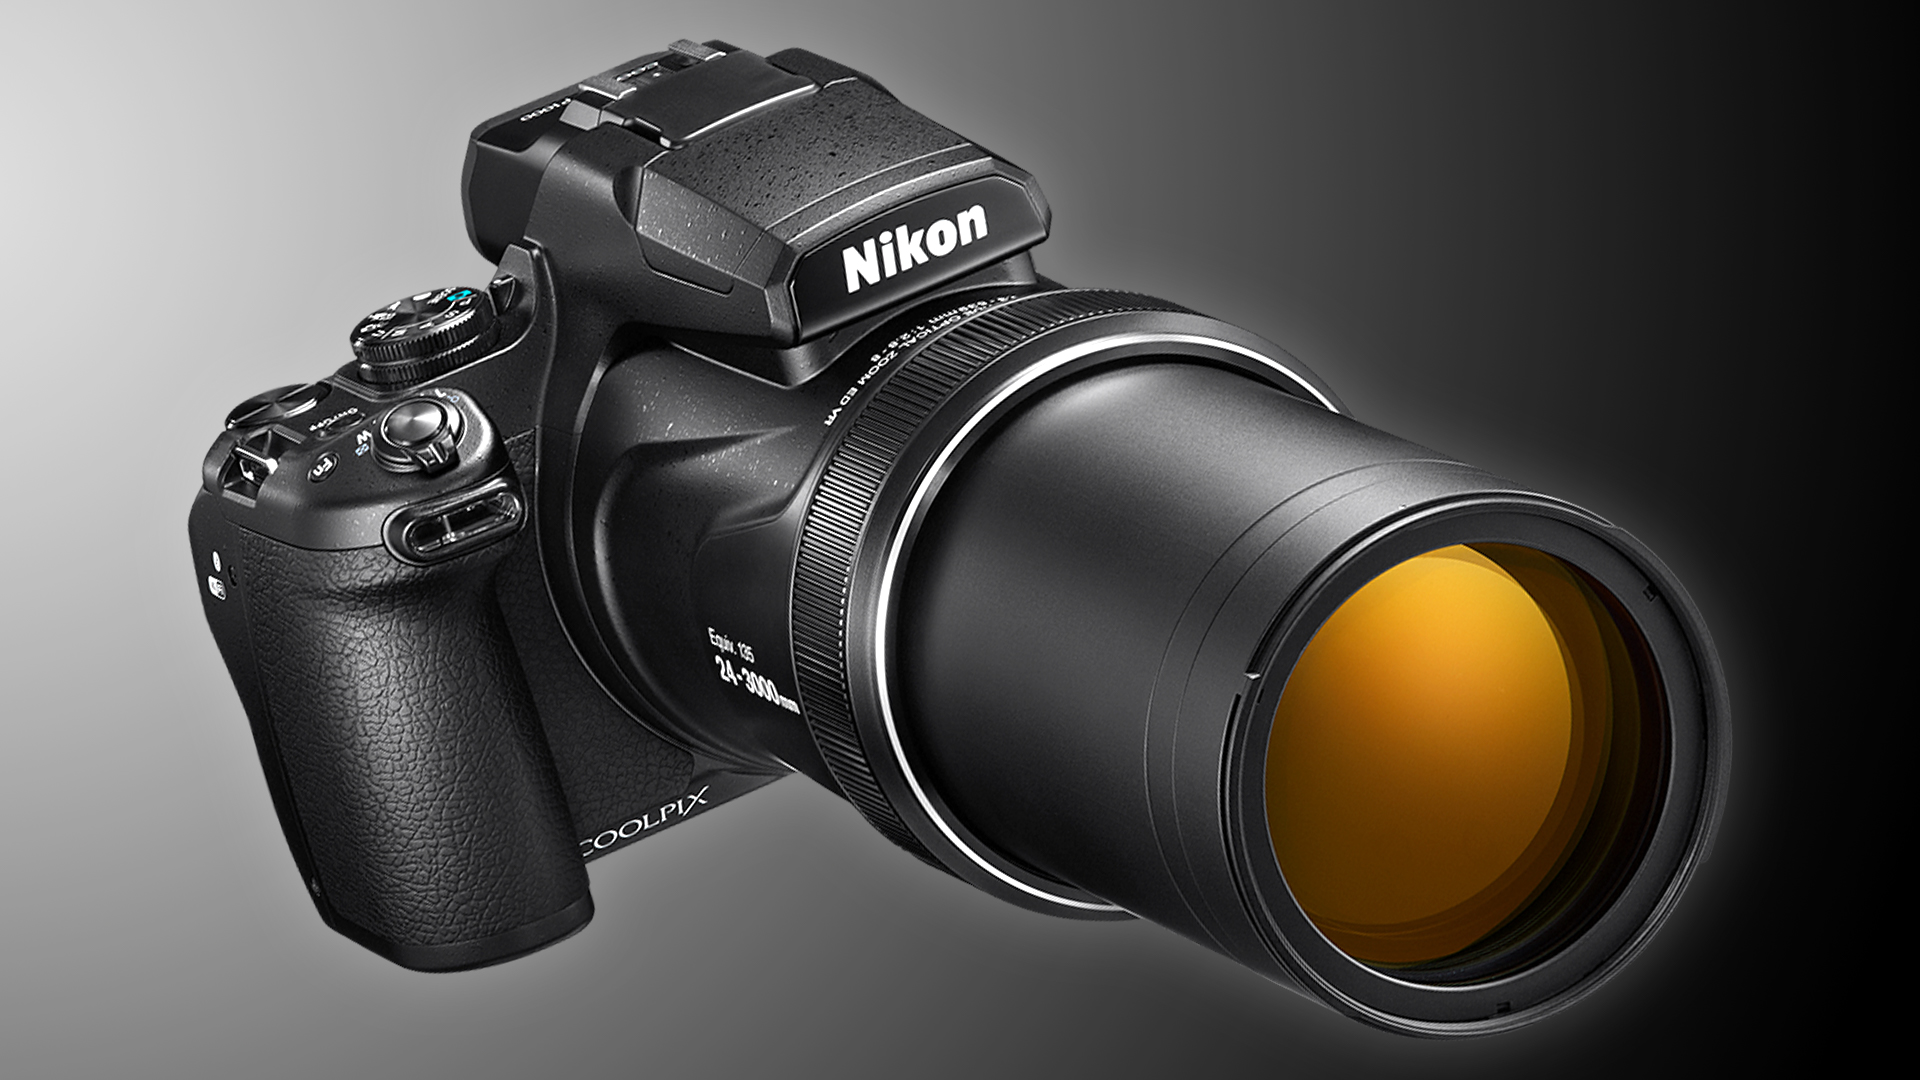 ニコンCOOLPIX P1000 － 125倍ズームを持つコンパクトカメラ | CineD